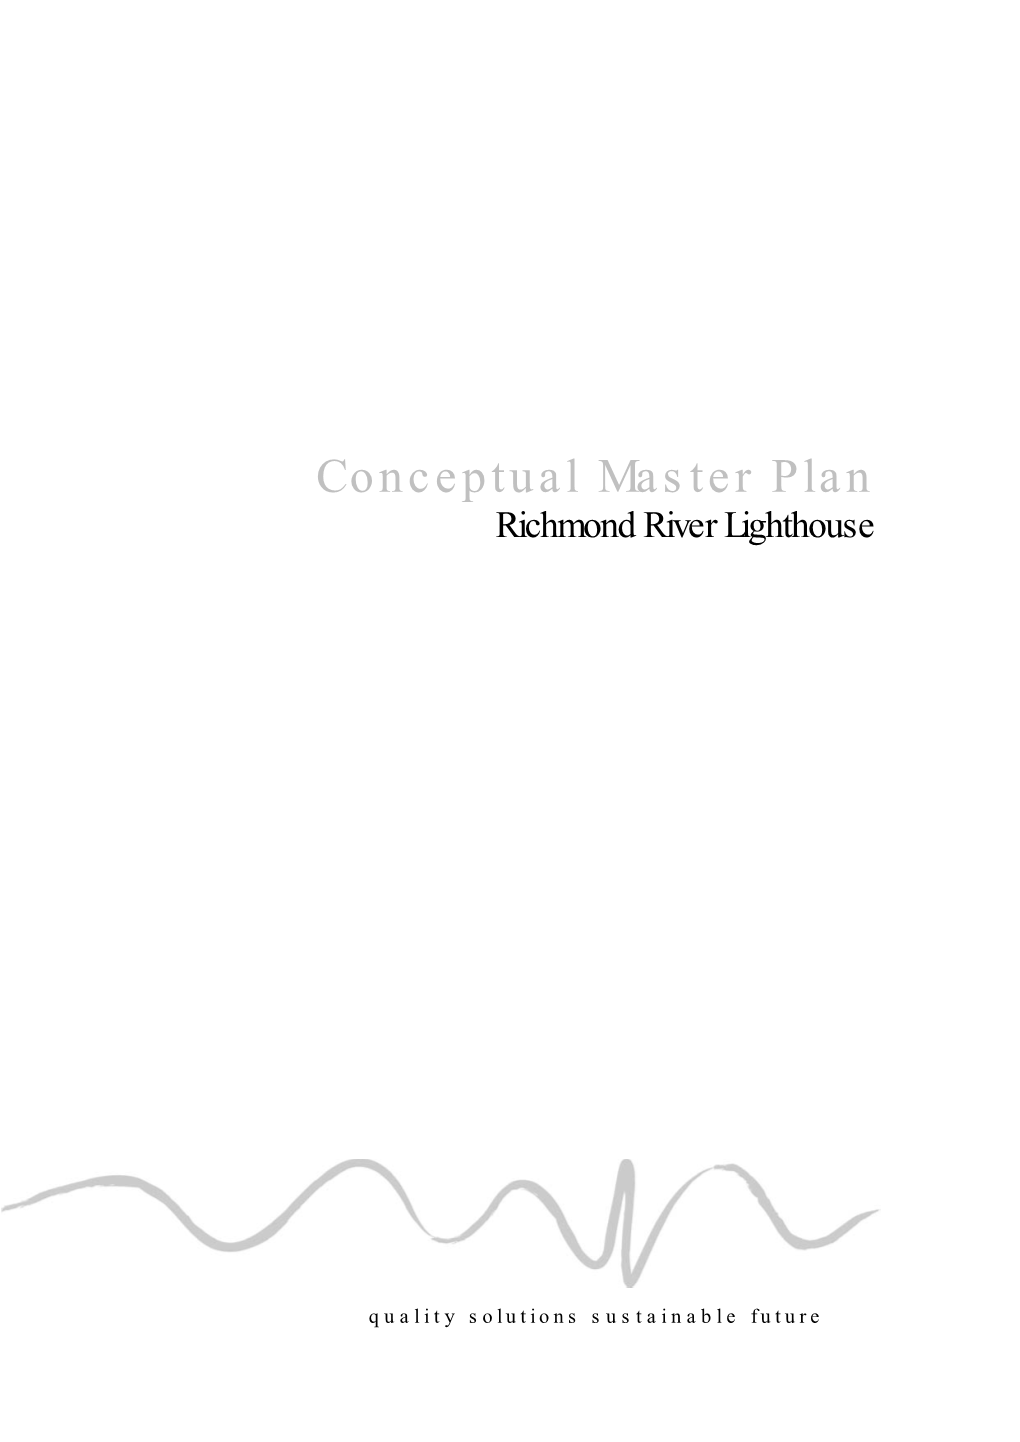 Richmond River Lighthouse Conceptual Master Plan 2007